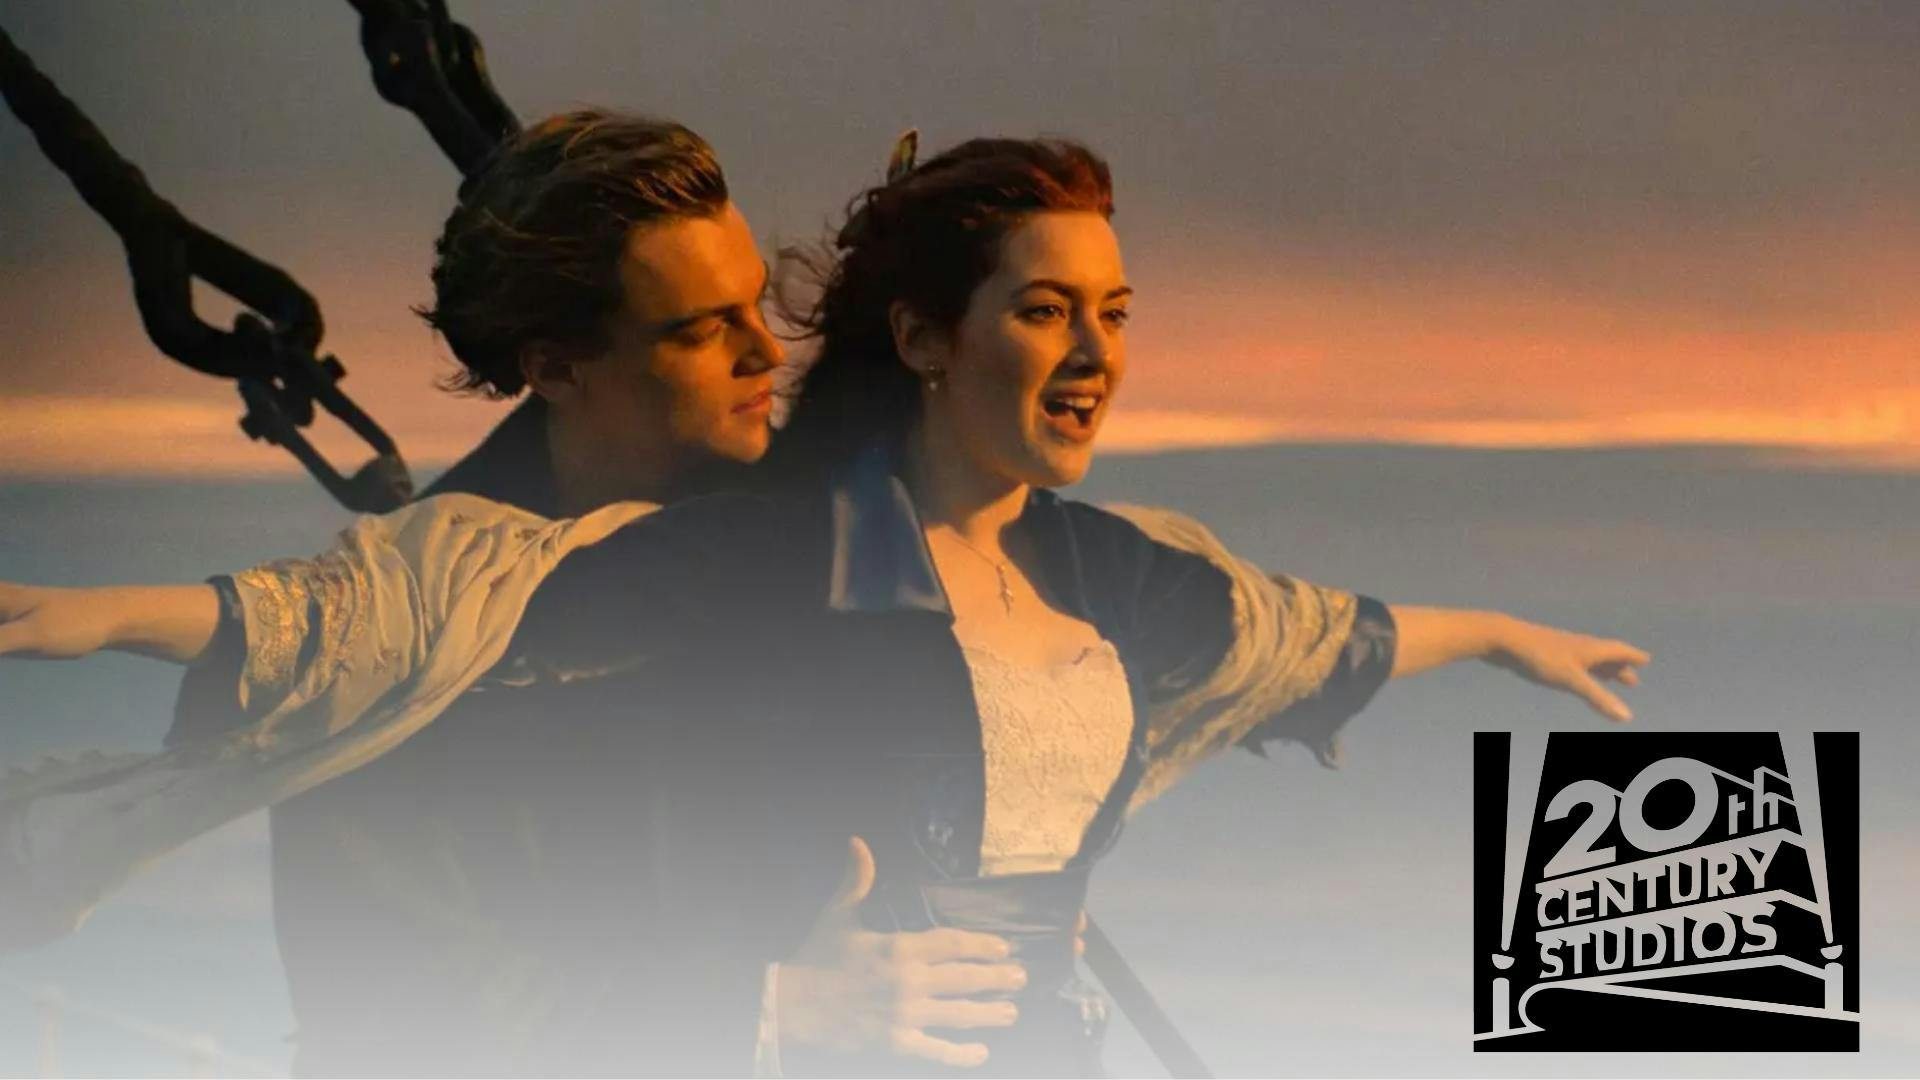 poster du film Titanic produit par 20th Century